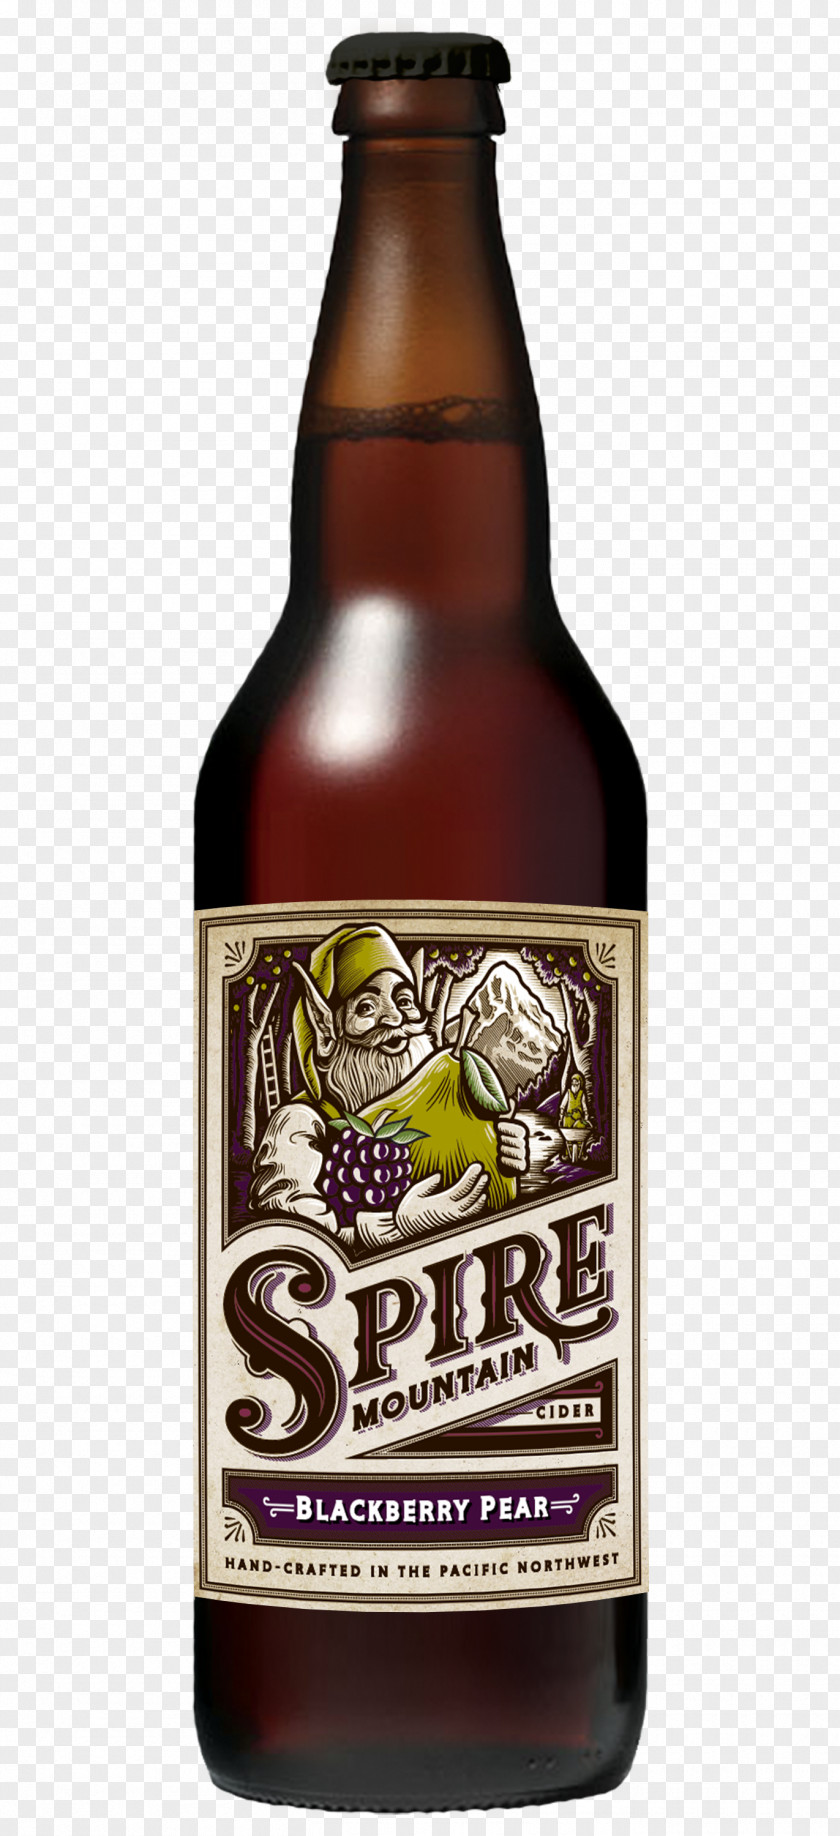 Beer Ale Bottle RateBeer.com Cider PNG